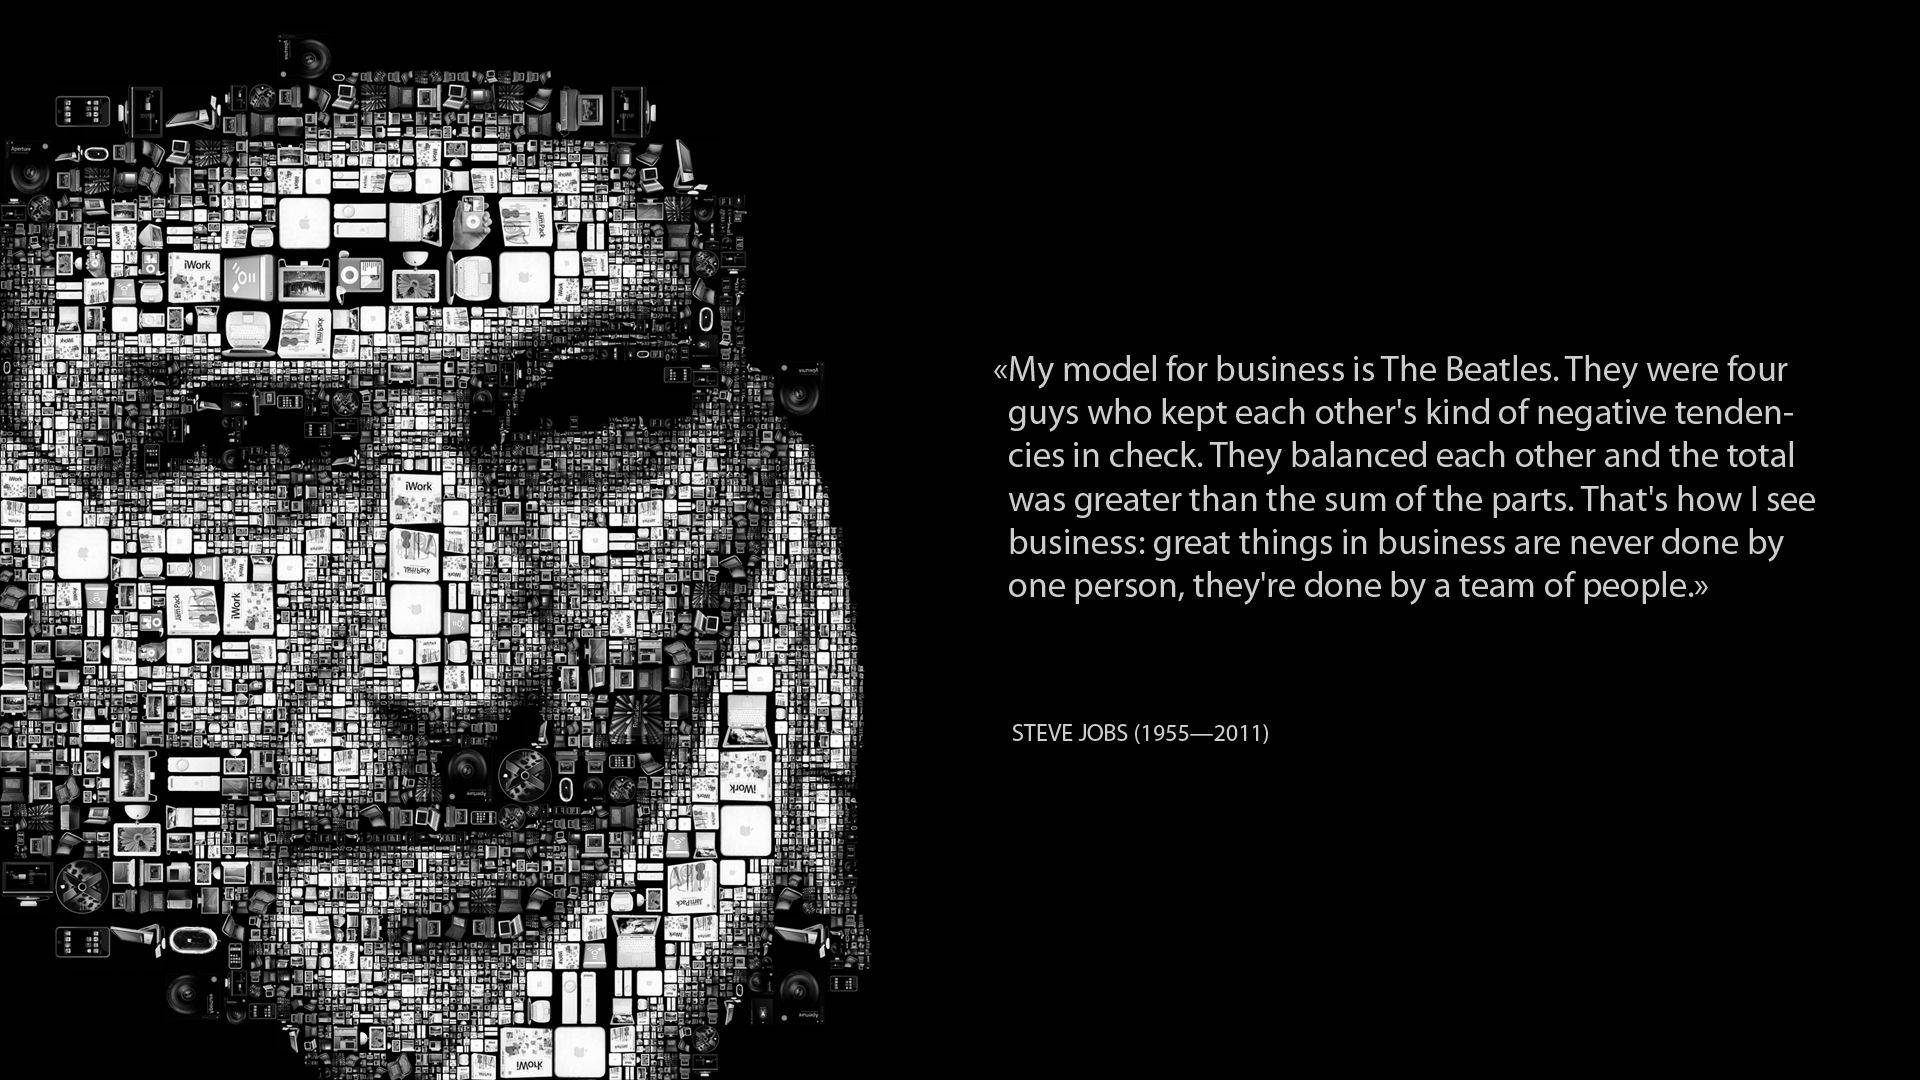 Steve Jobs Mosaic Inspirational